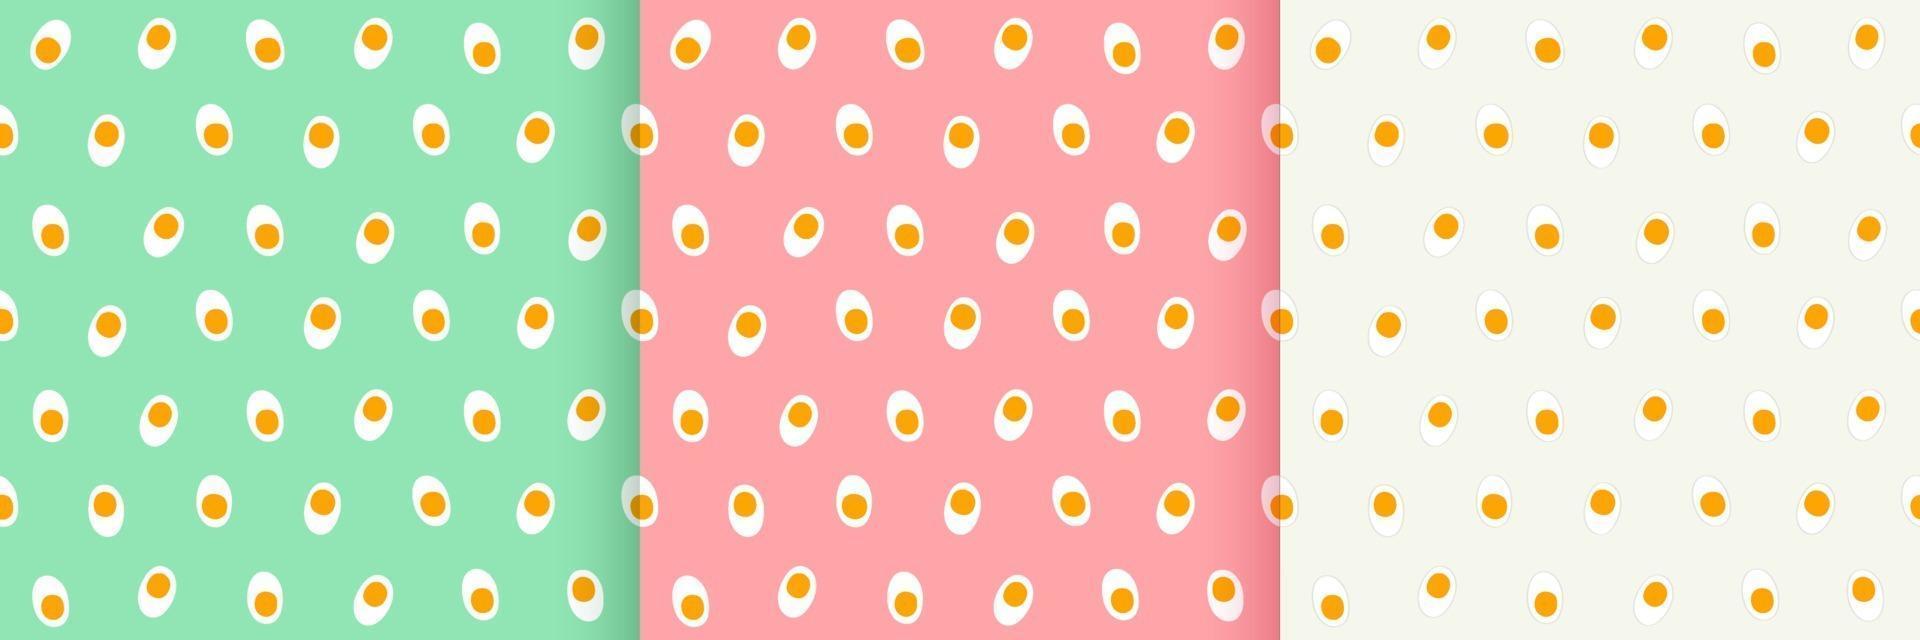 conjunto de papel de parede padrão sem emenda de ovos cozidos no fundo, design plano simples, ilustração vetorial vetor